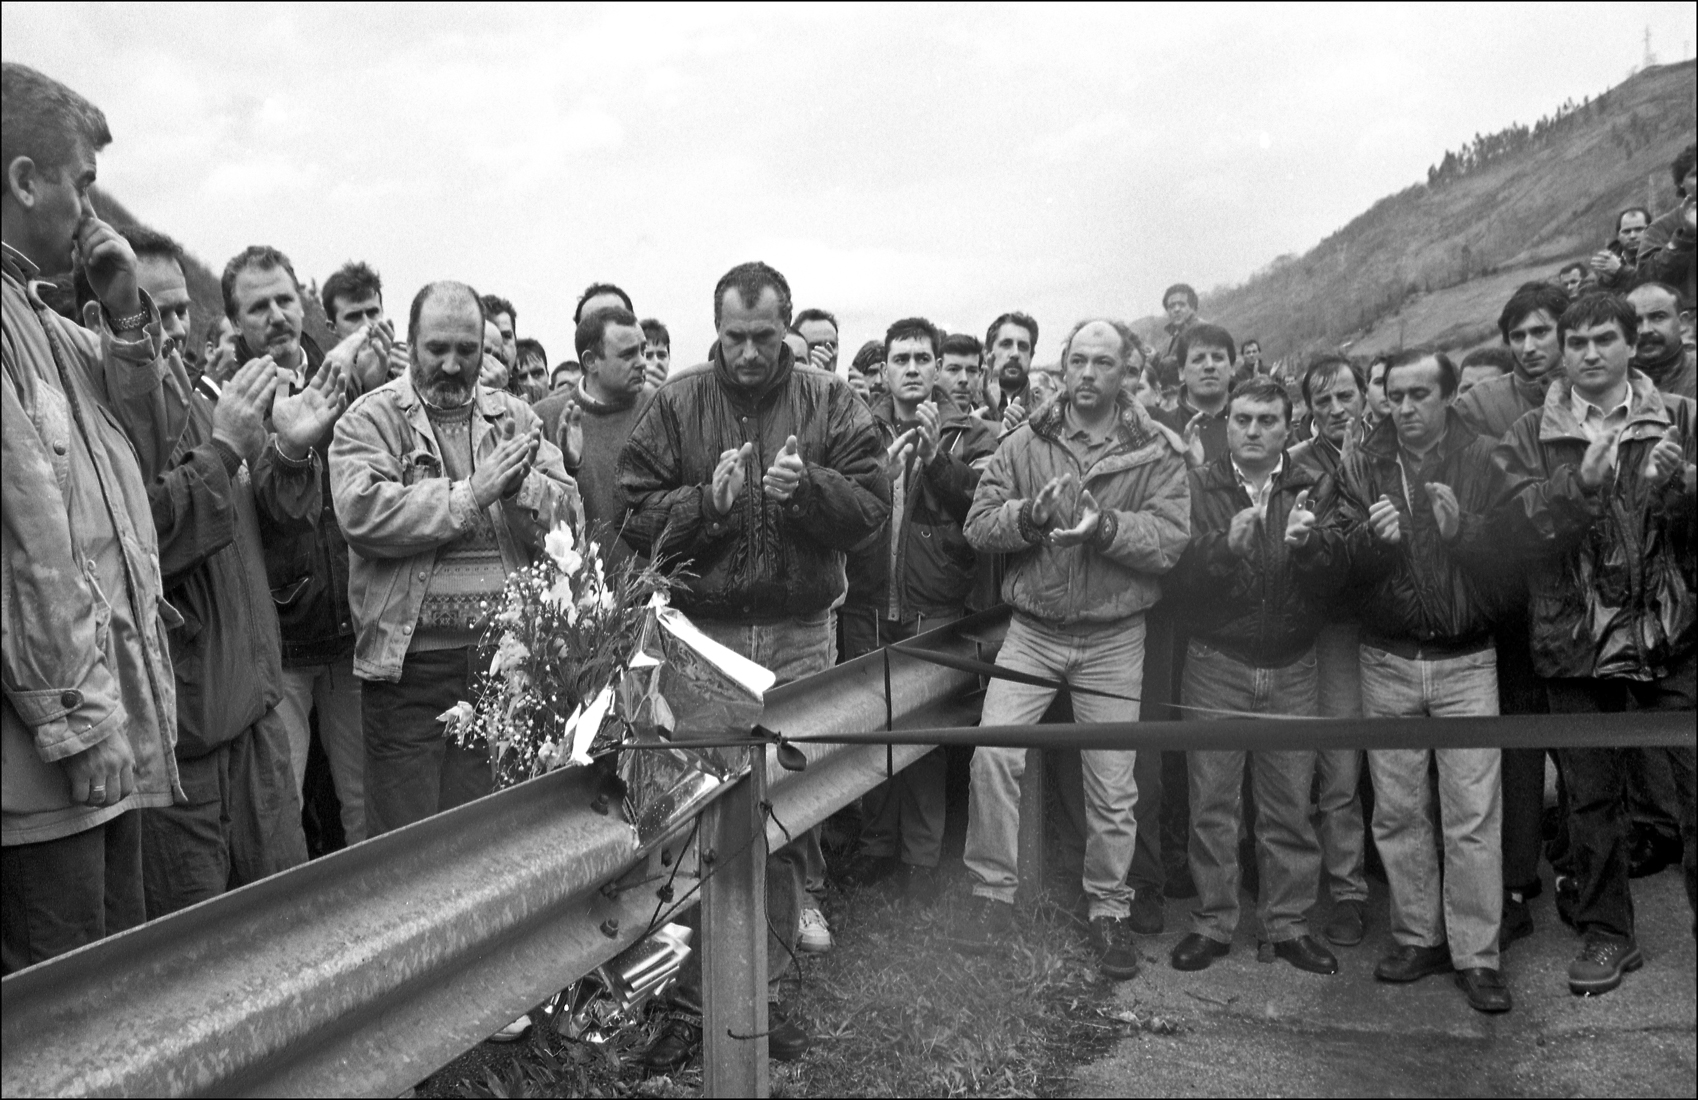 41 - Homenaje al minero atropellado en la A-66, Lorenzo Gallardo Carro, durante las movilizaciones mineras. Ujo. Asturias 1998 - BN